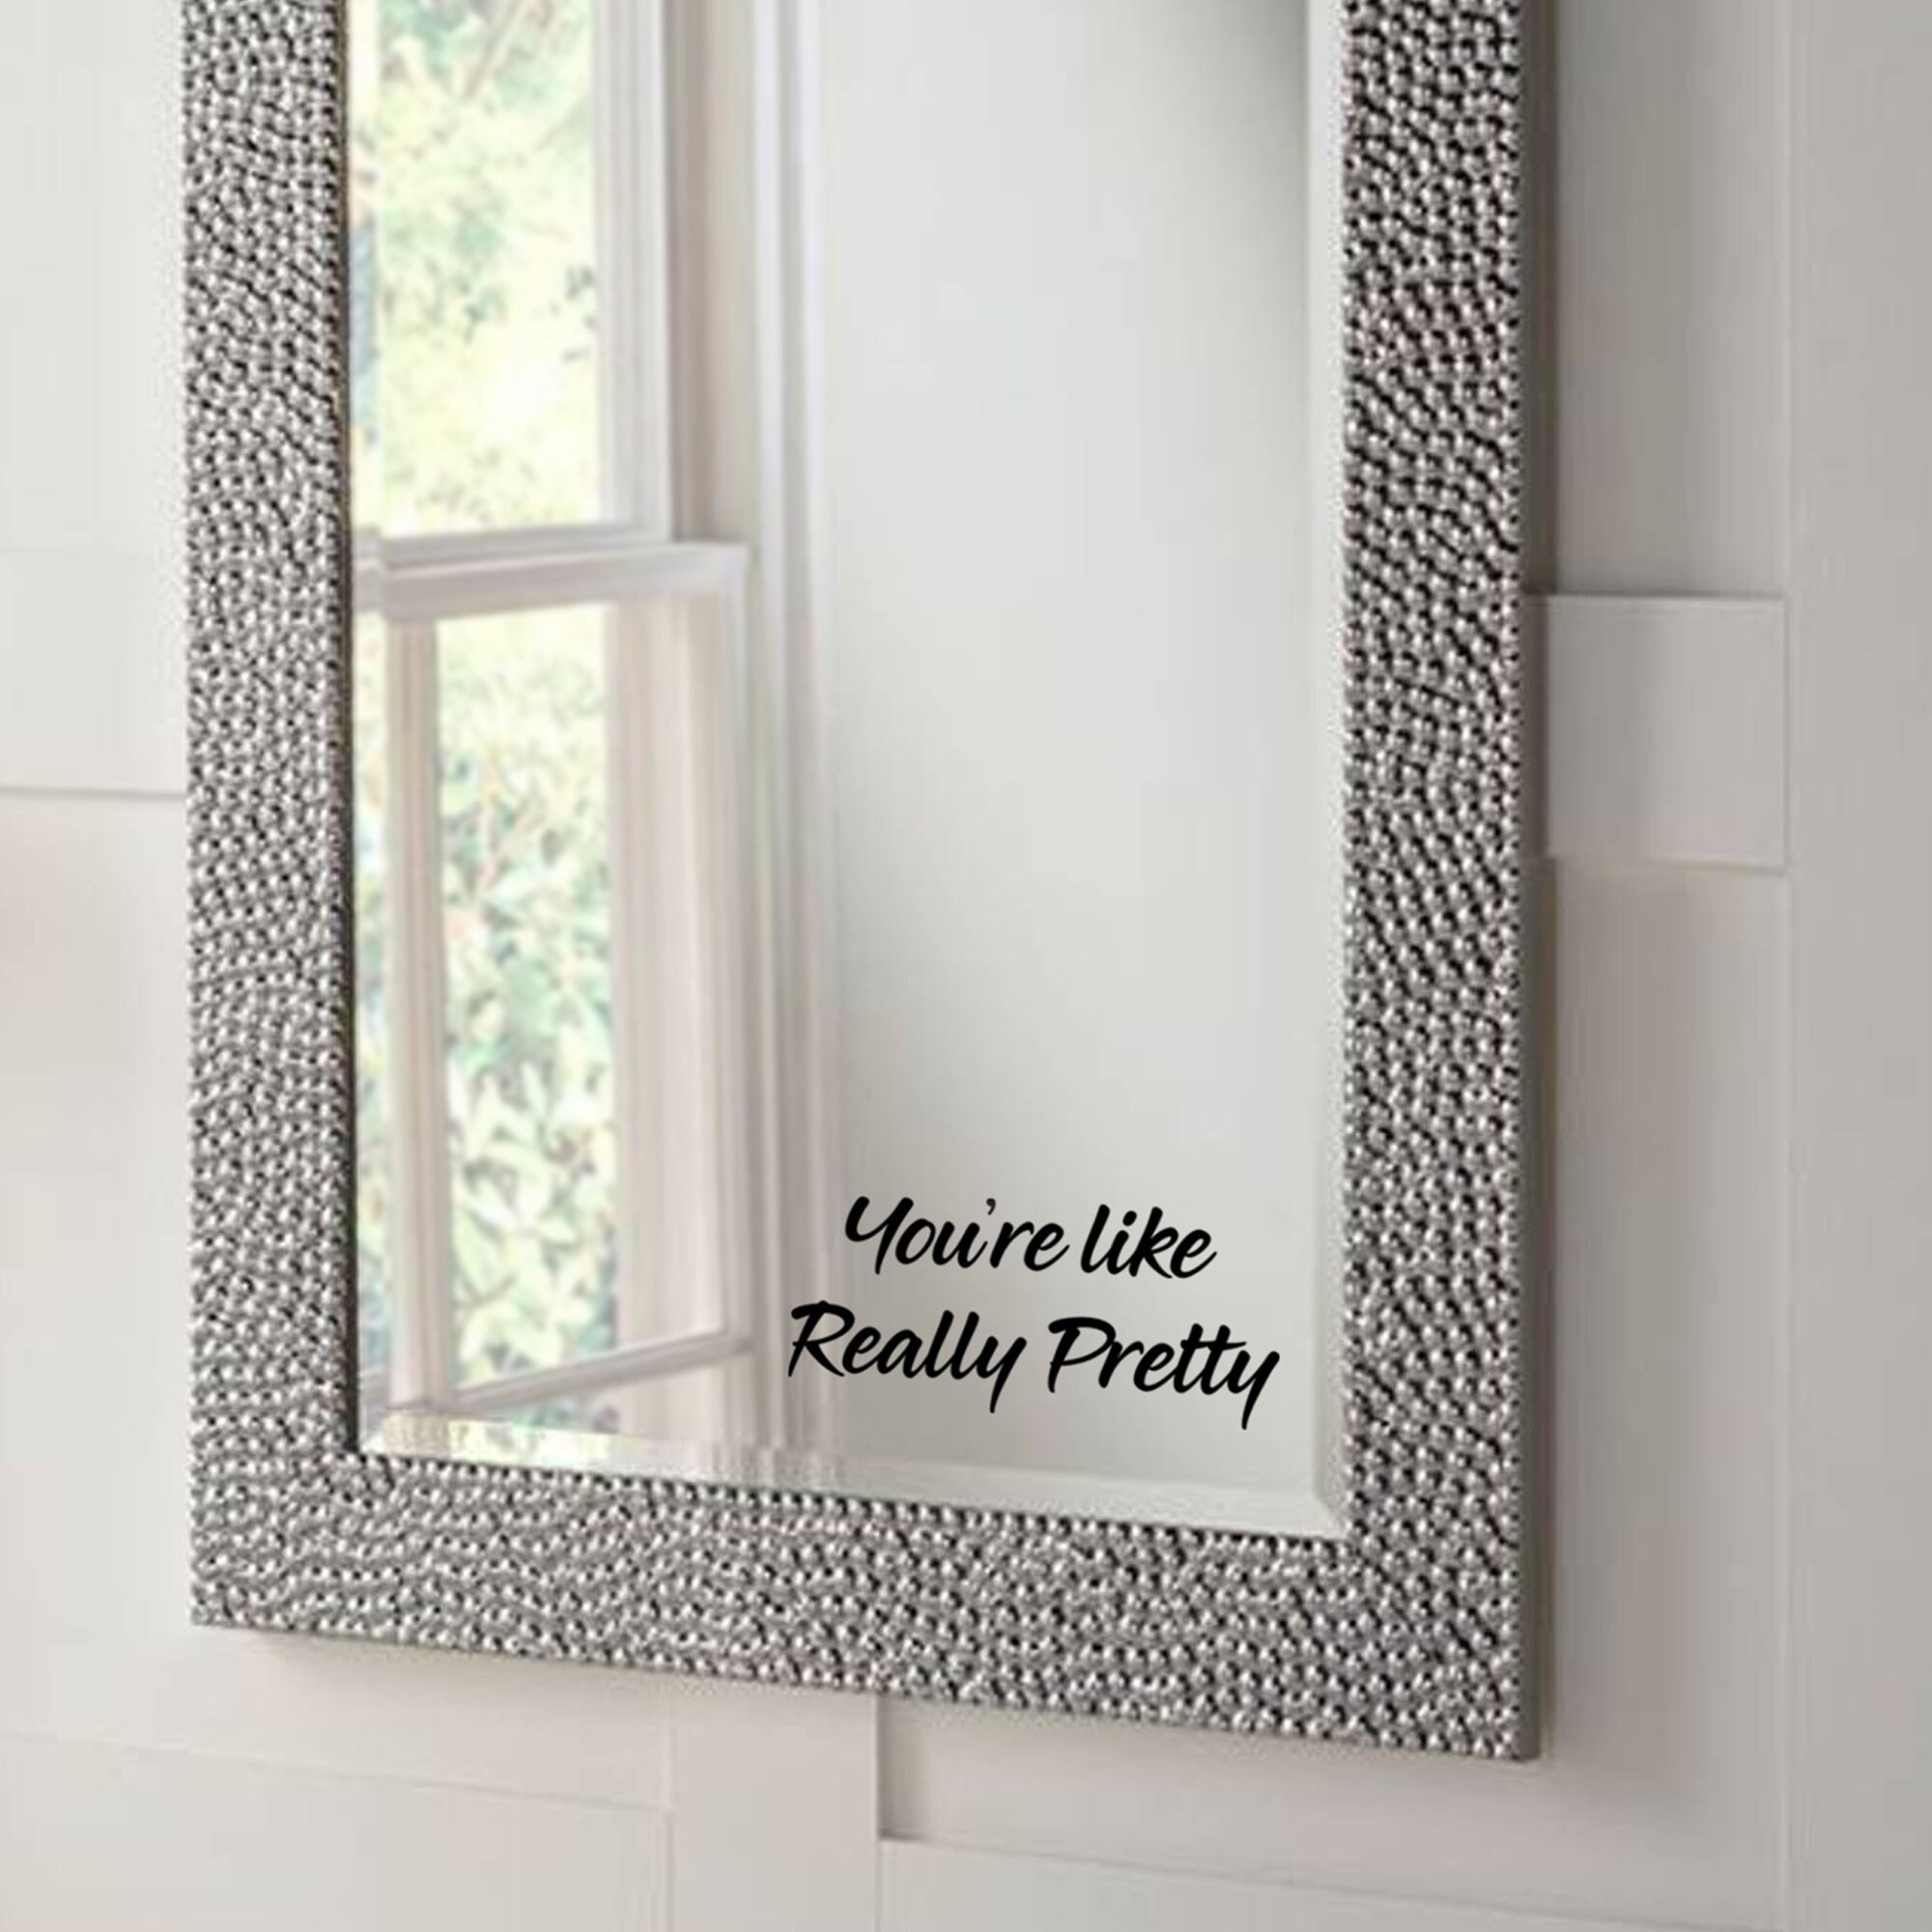 You're like really pretty Sticker for Bathroom Mirror Dresser Bath Screen Decal 